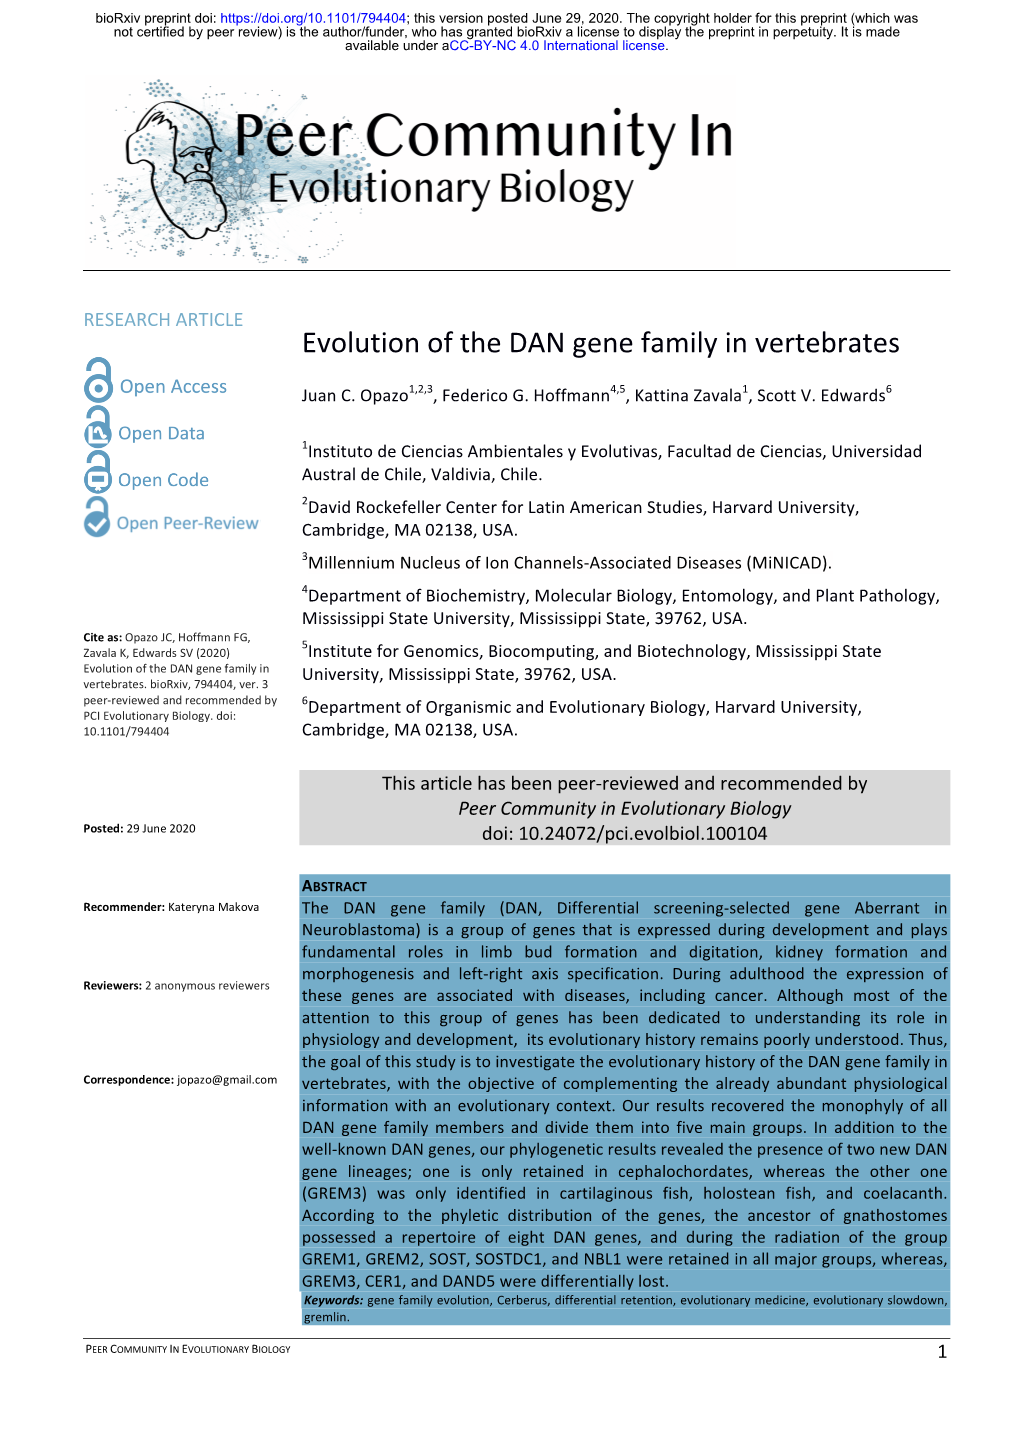 Evolution of the DAN Gene Family in Vertebrates